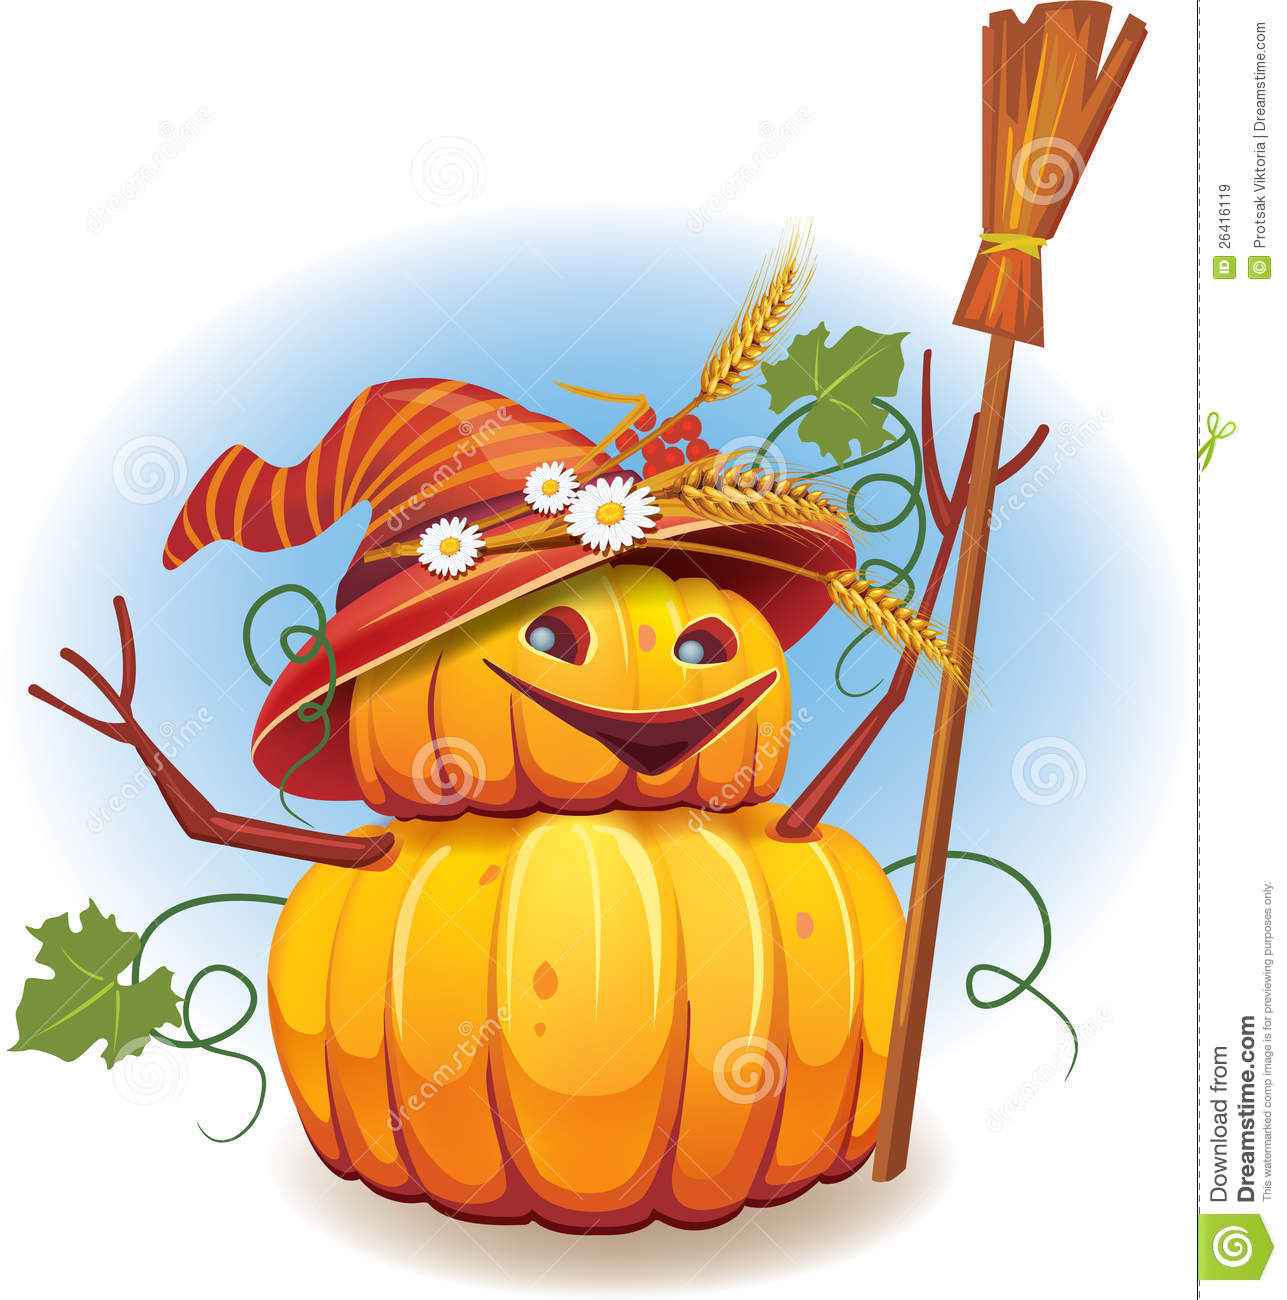 Golden Pumpkin Harvest Royalty Free Stock Images   Image  26416119